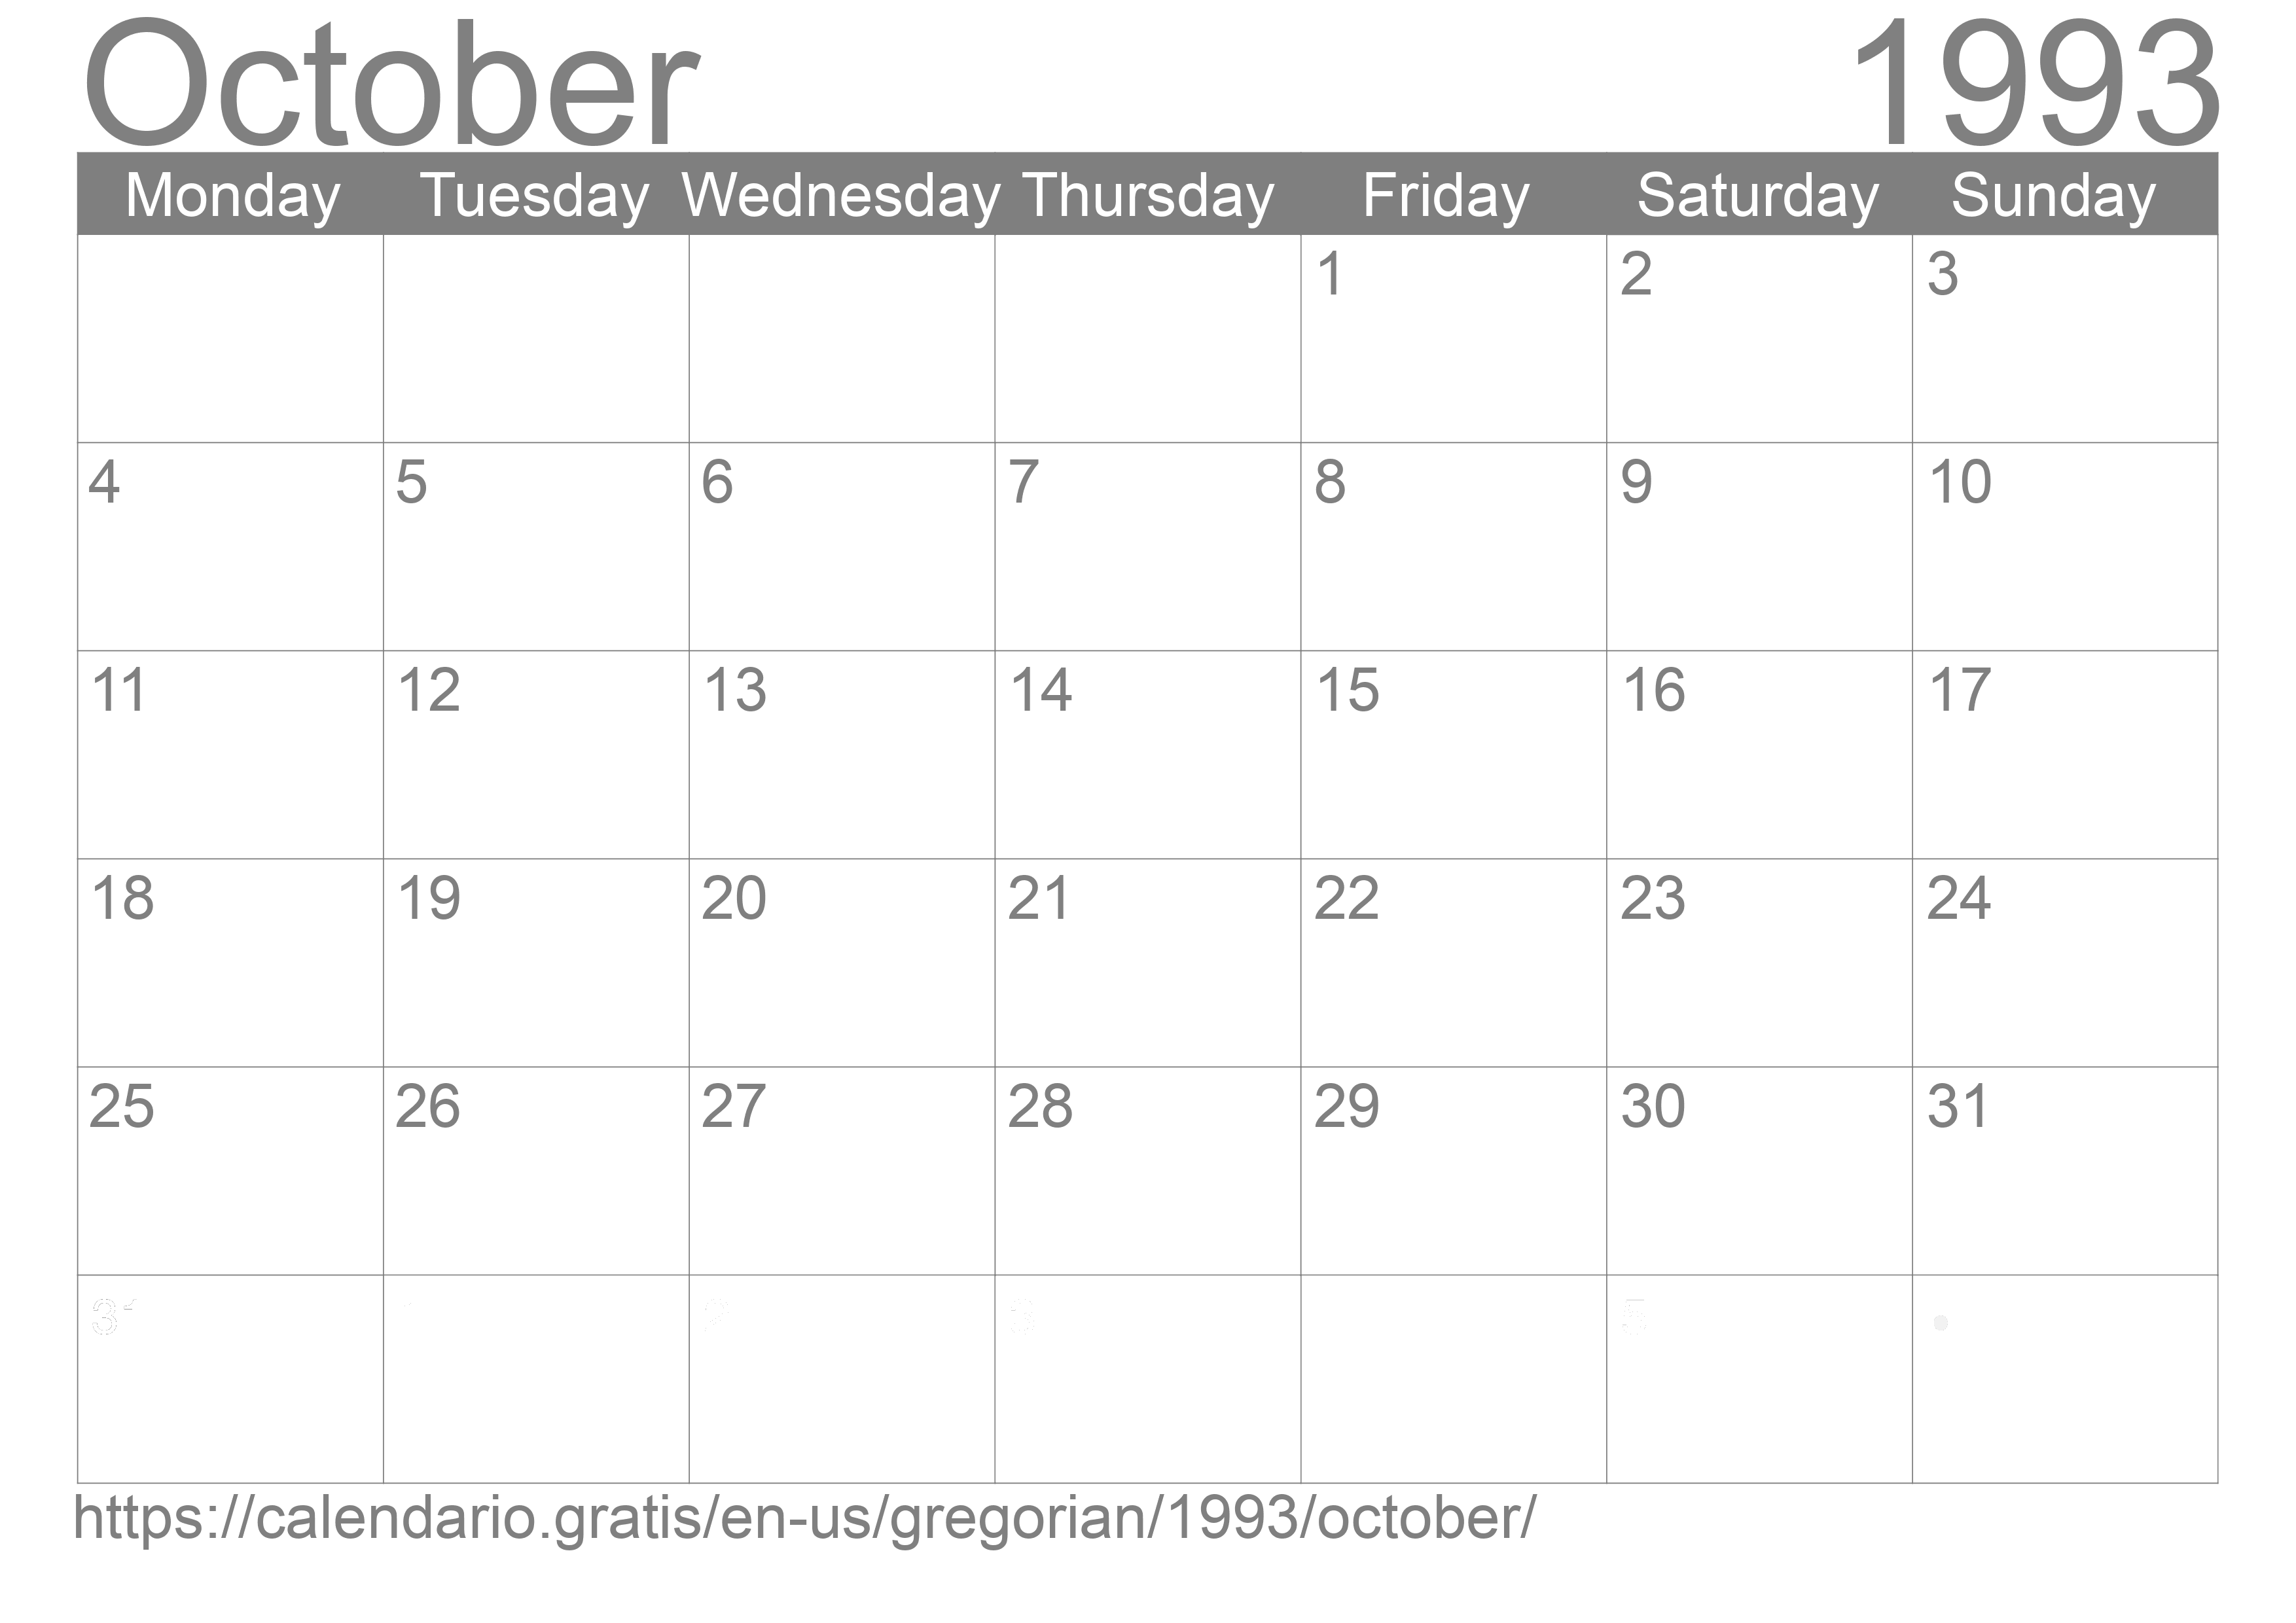 Calendar October 1993 to print